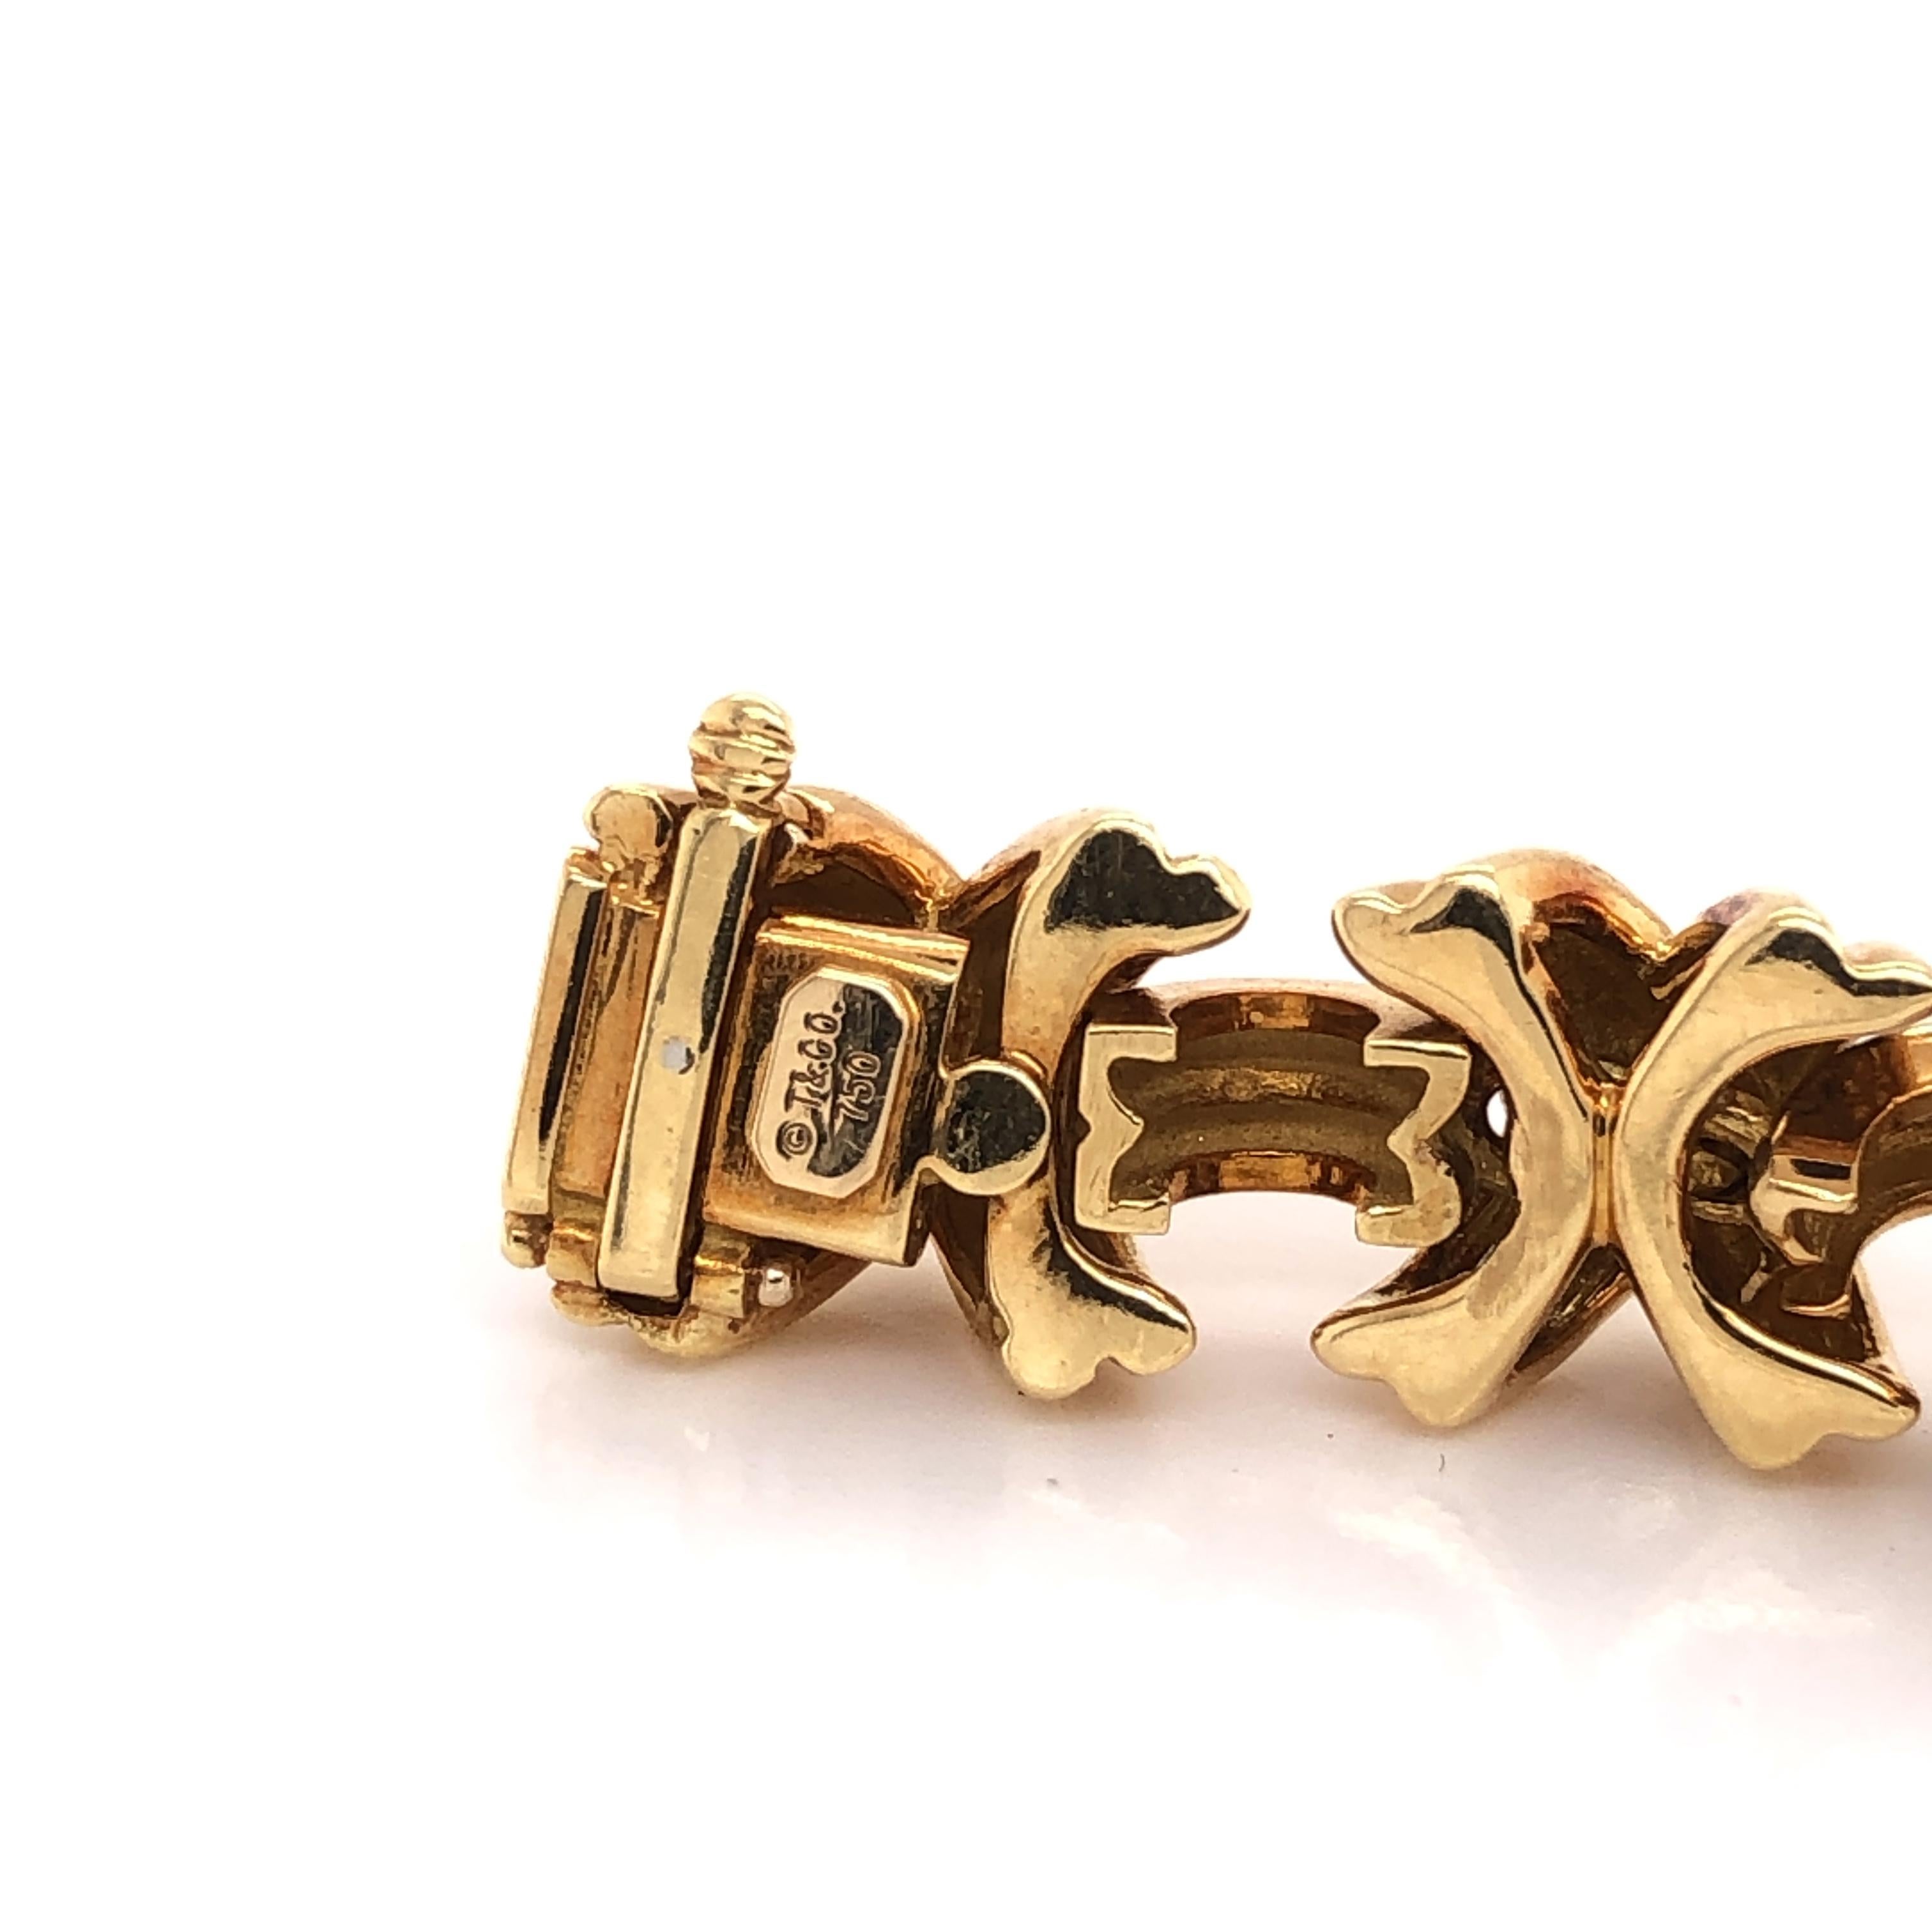 tiffany 18 karat gold bracelet